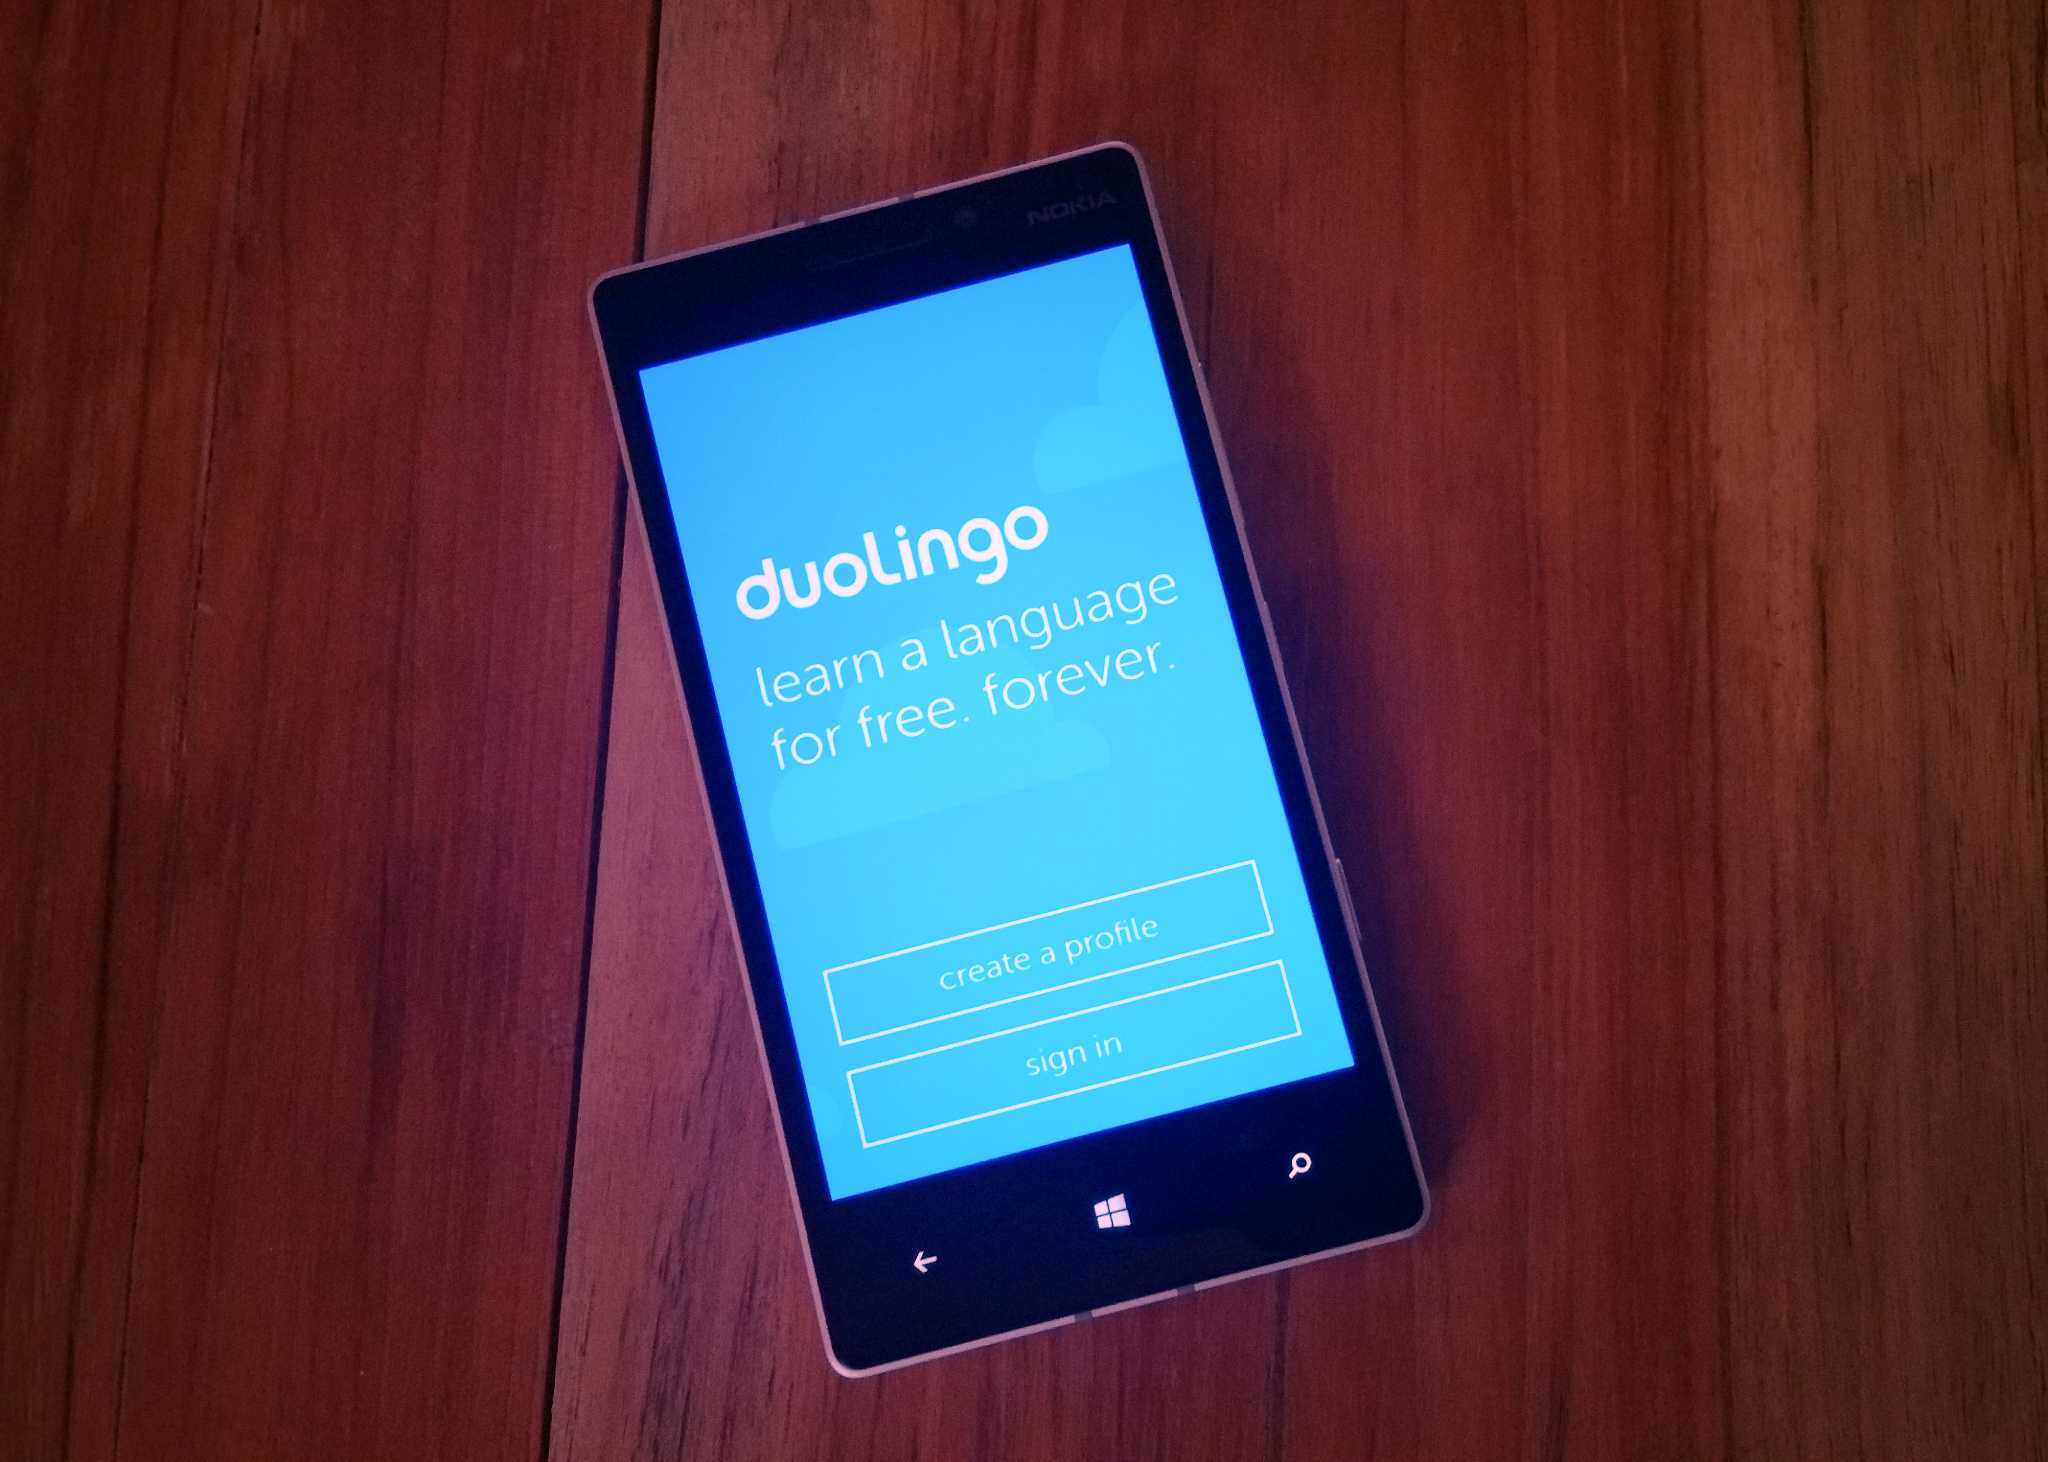 duolingo-lumia930-hero.jpg